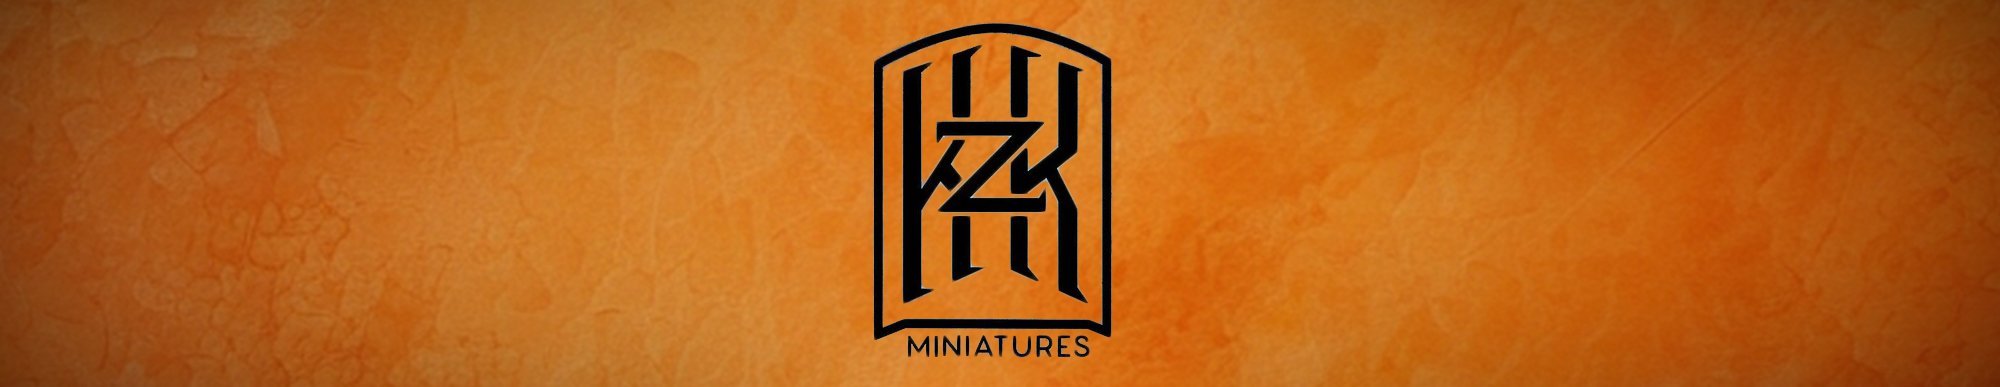 Kzk Minis logo banner